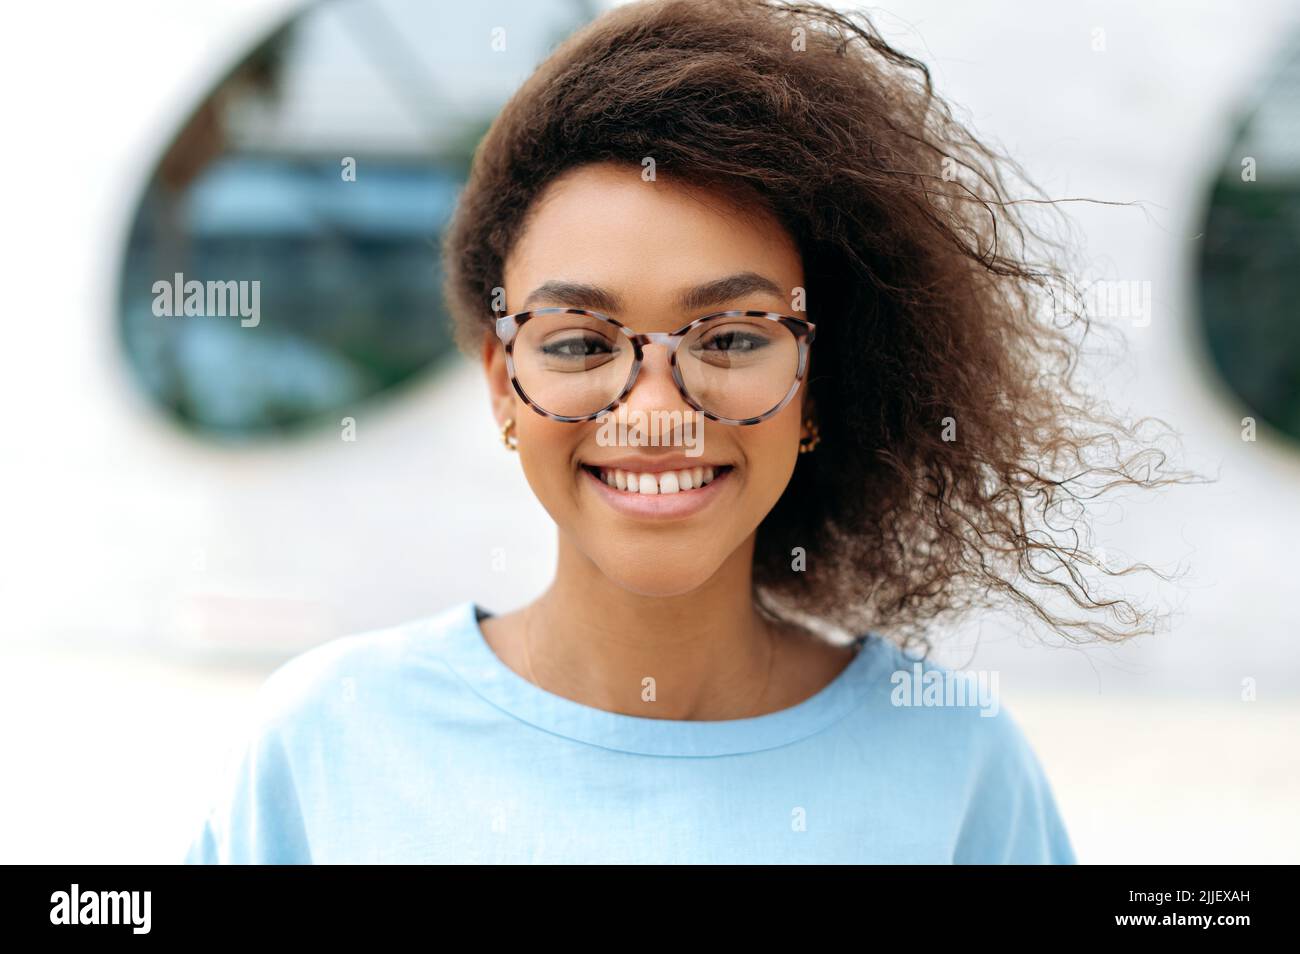 Nahaufnahme einer selbstbewussten, erfolgreichen, jungen, lockigen afroamerikanischen Geschäftsfrau oder Schülerin, die mit einer Brille im Freien steht und mit einem süßen Lächeln auf die Kamera blickt Stockfoto